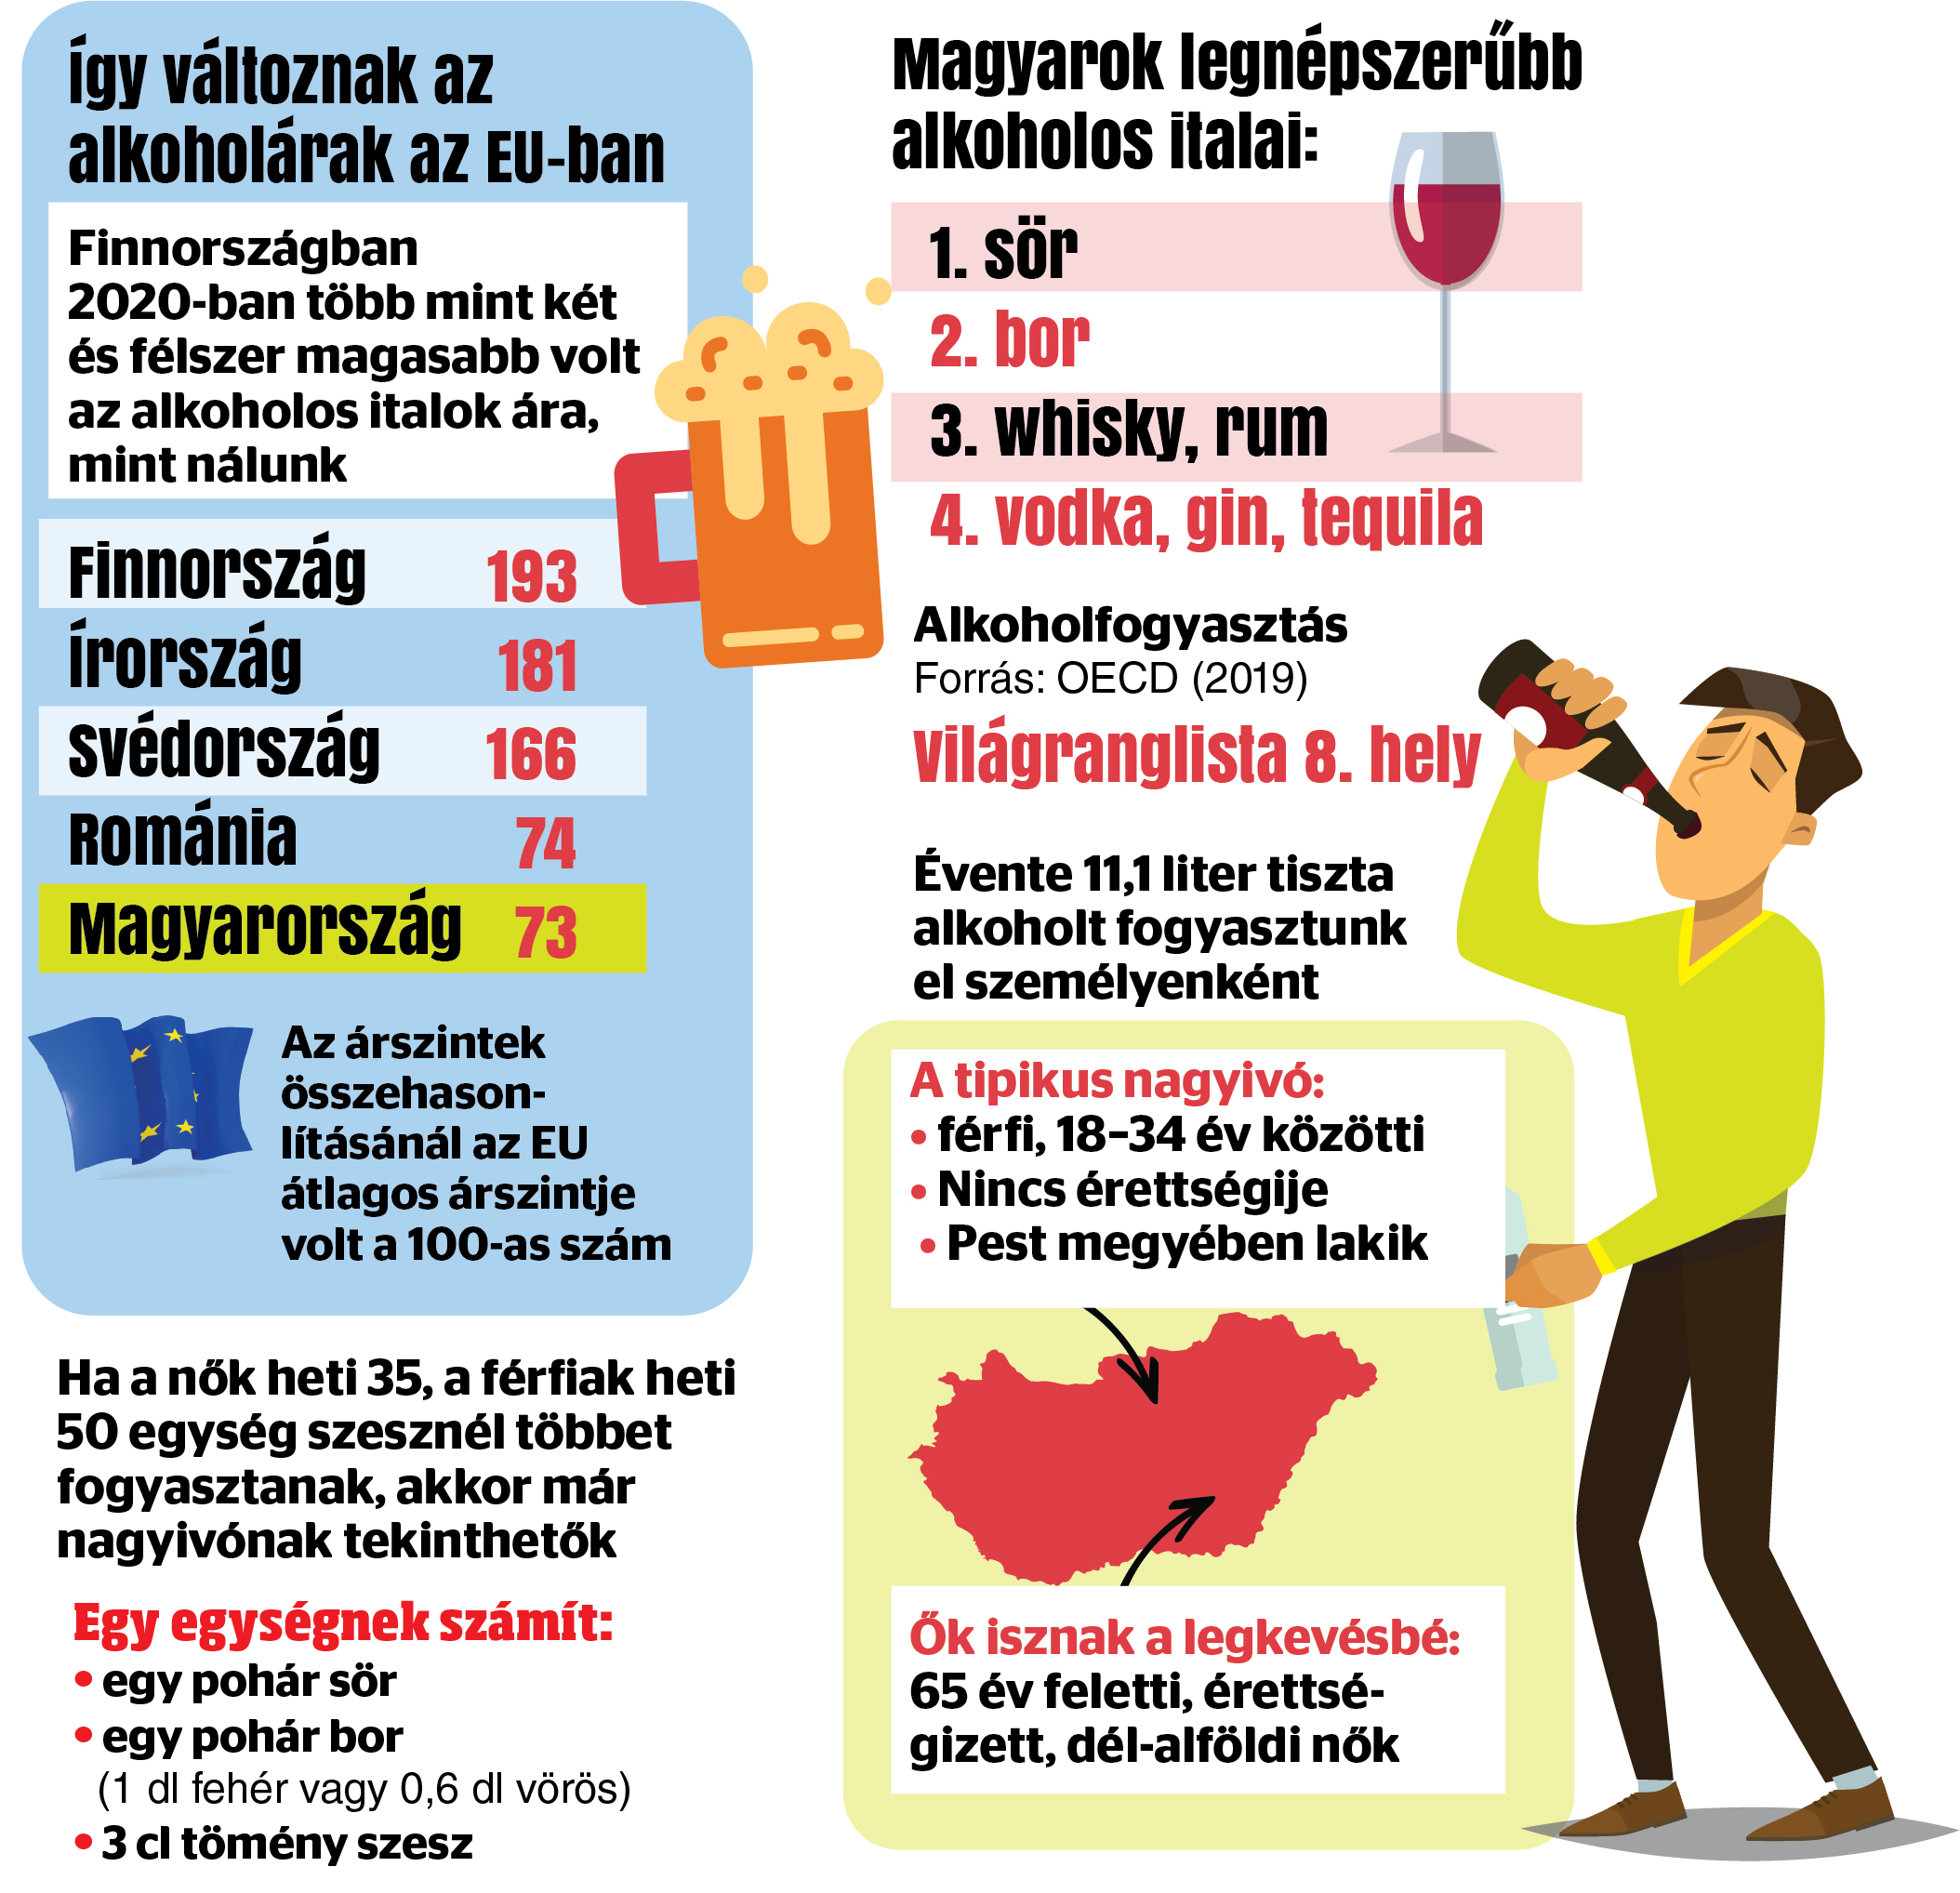 Olcsó a pia, ezért iszik a magyar? - Blikk